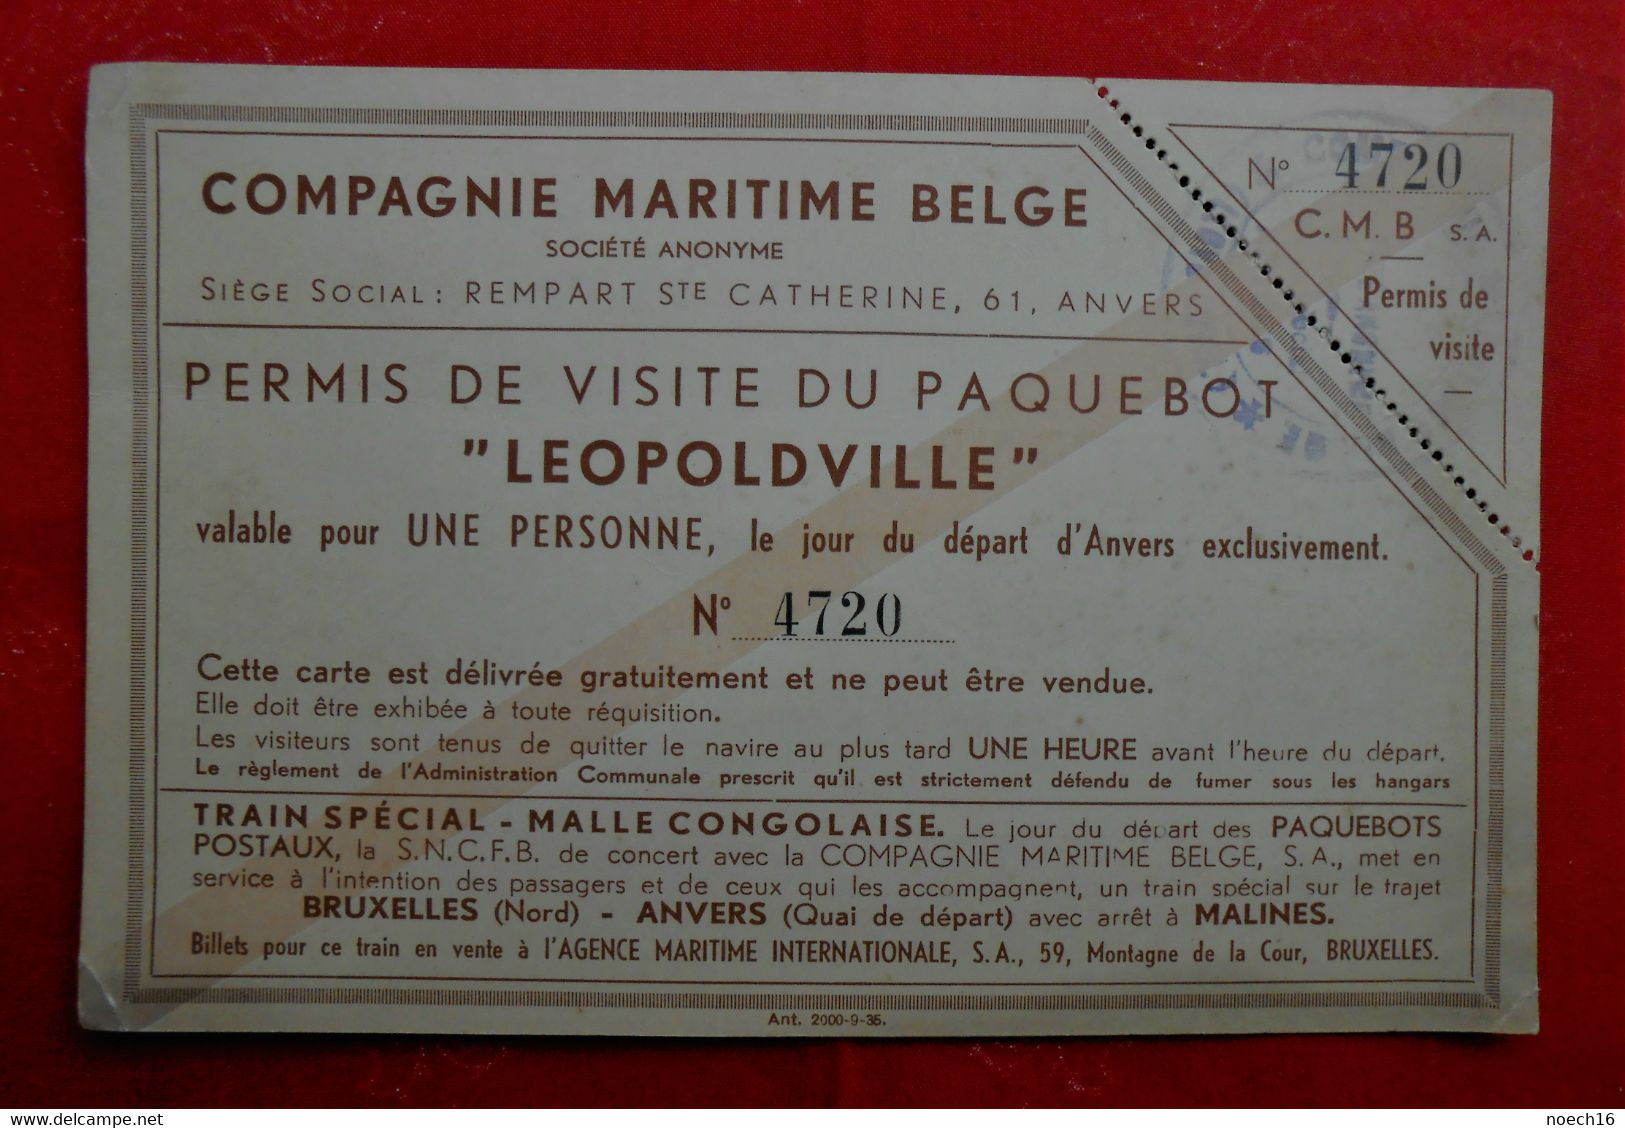 Compagnie Maritime Belge / Permis De Visite Du Paquebot "LEOPOLVILLE" - Tickets - Vouchers